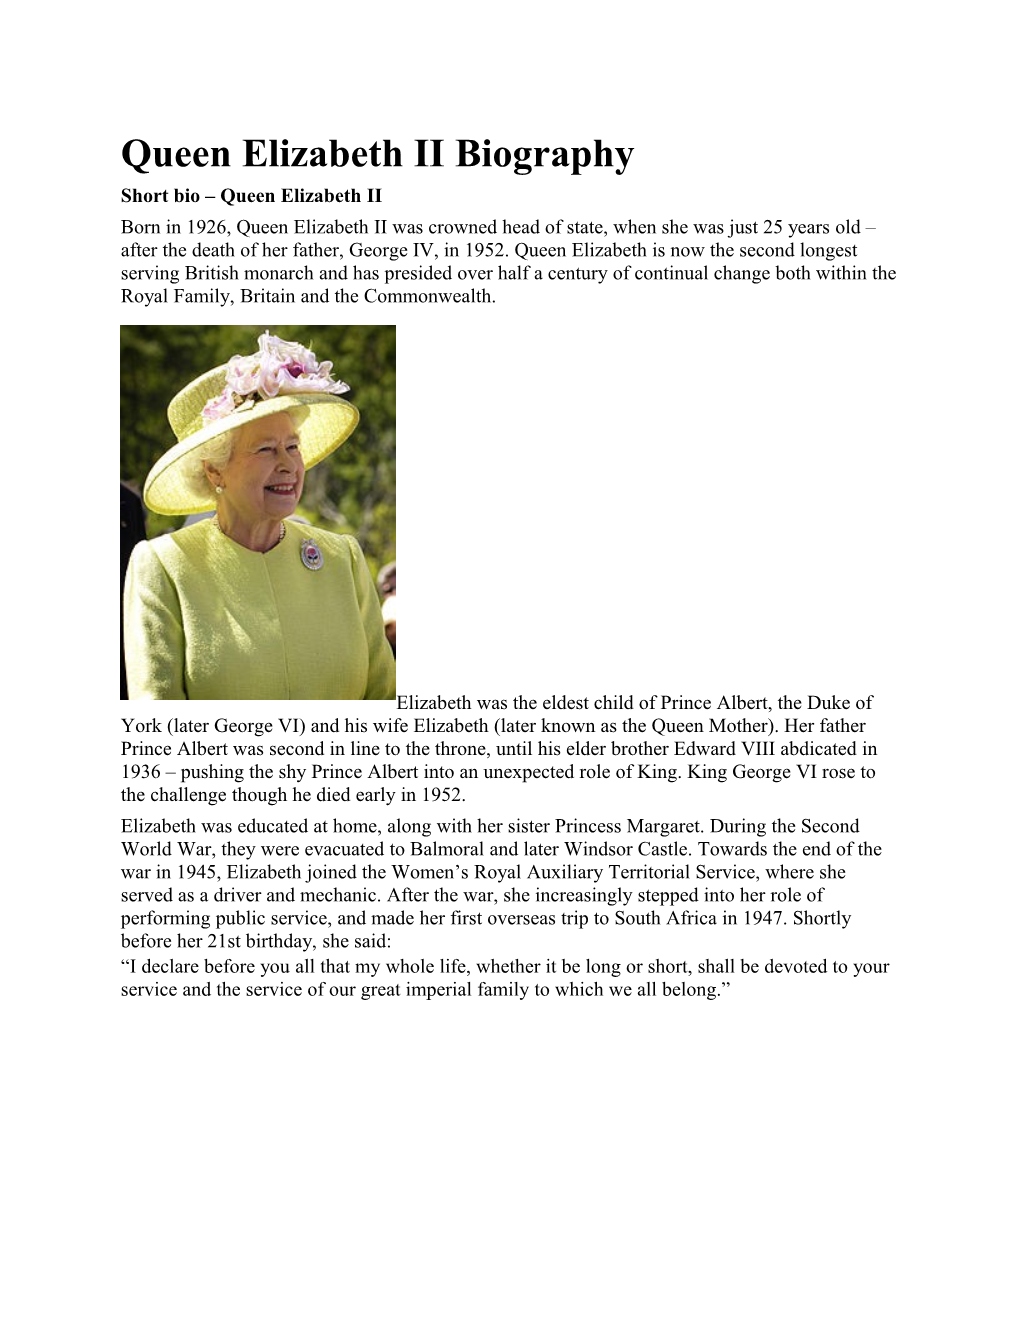 Short Bio Queen Elizabeth II